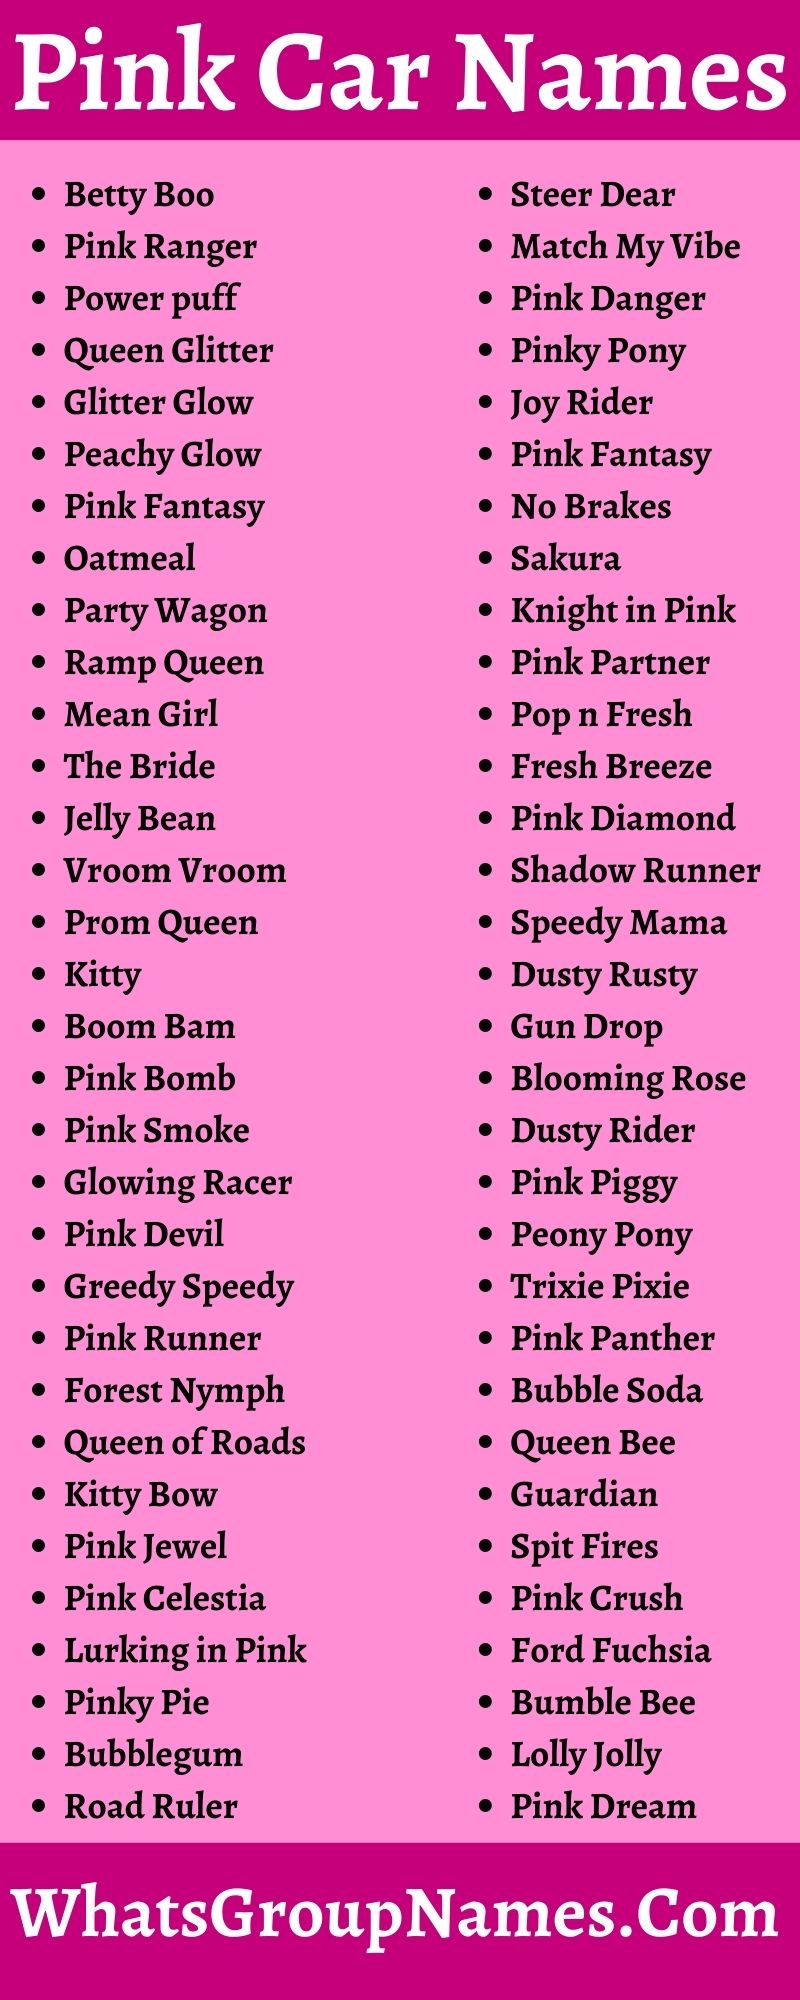 Pink Car Names